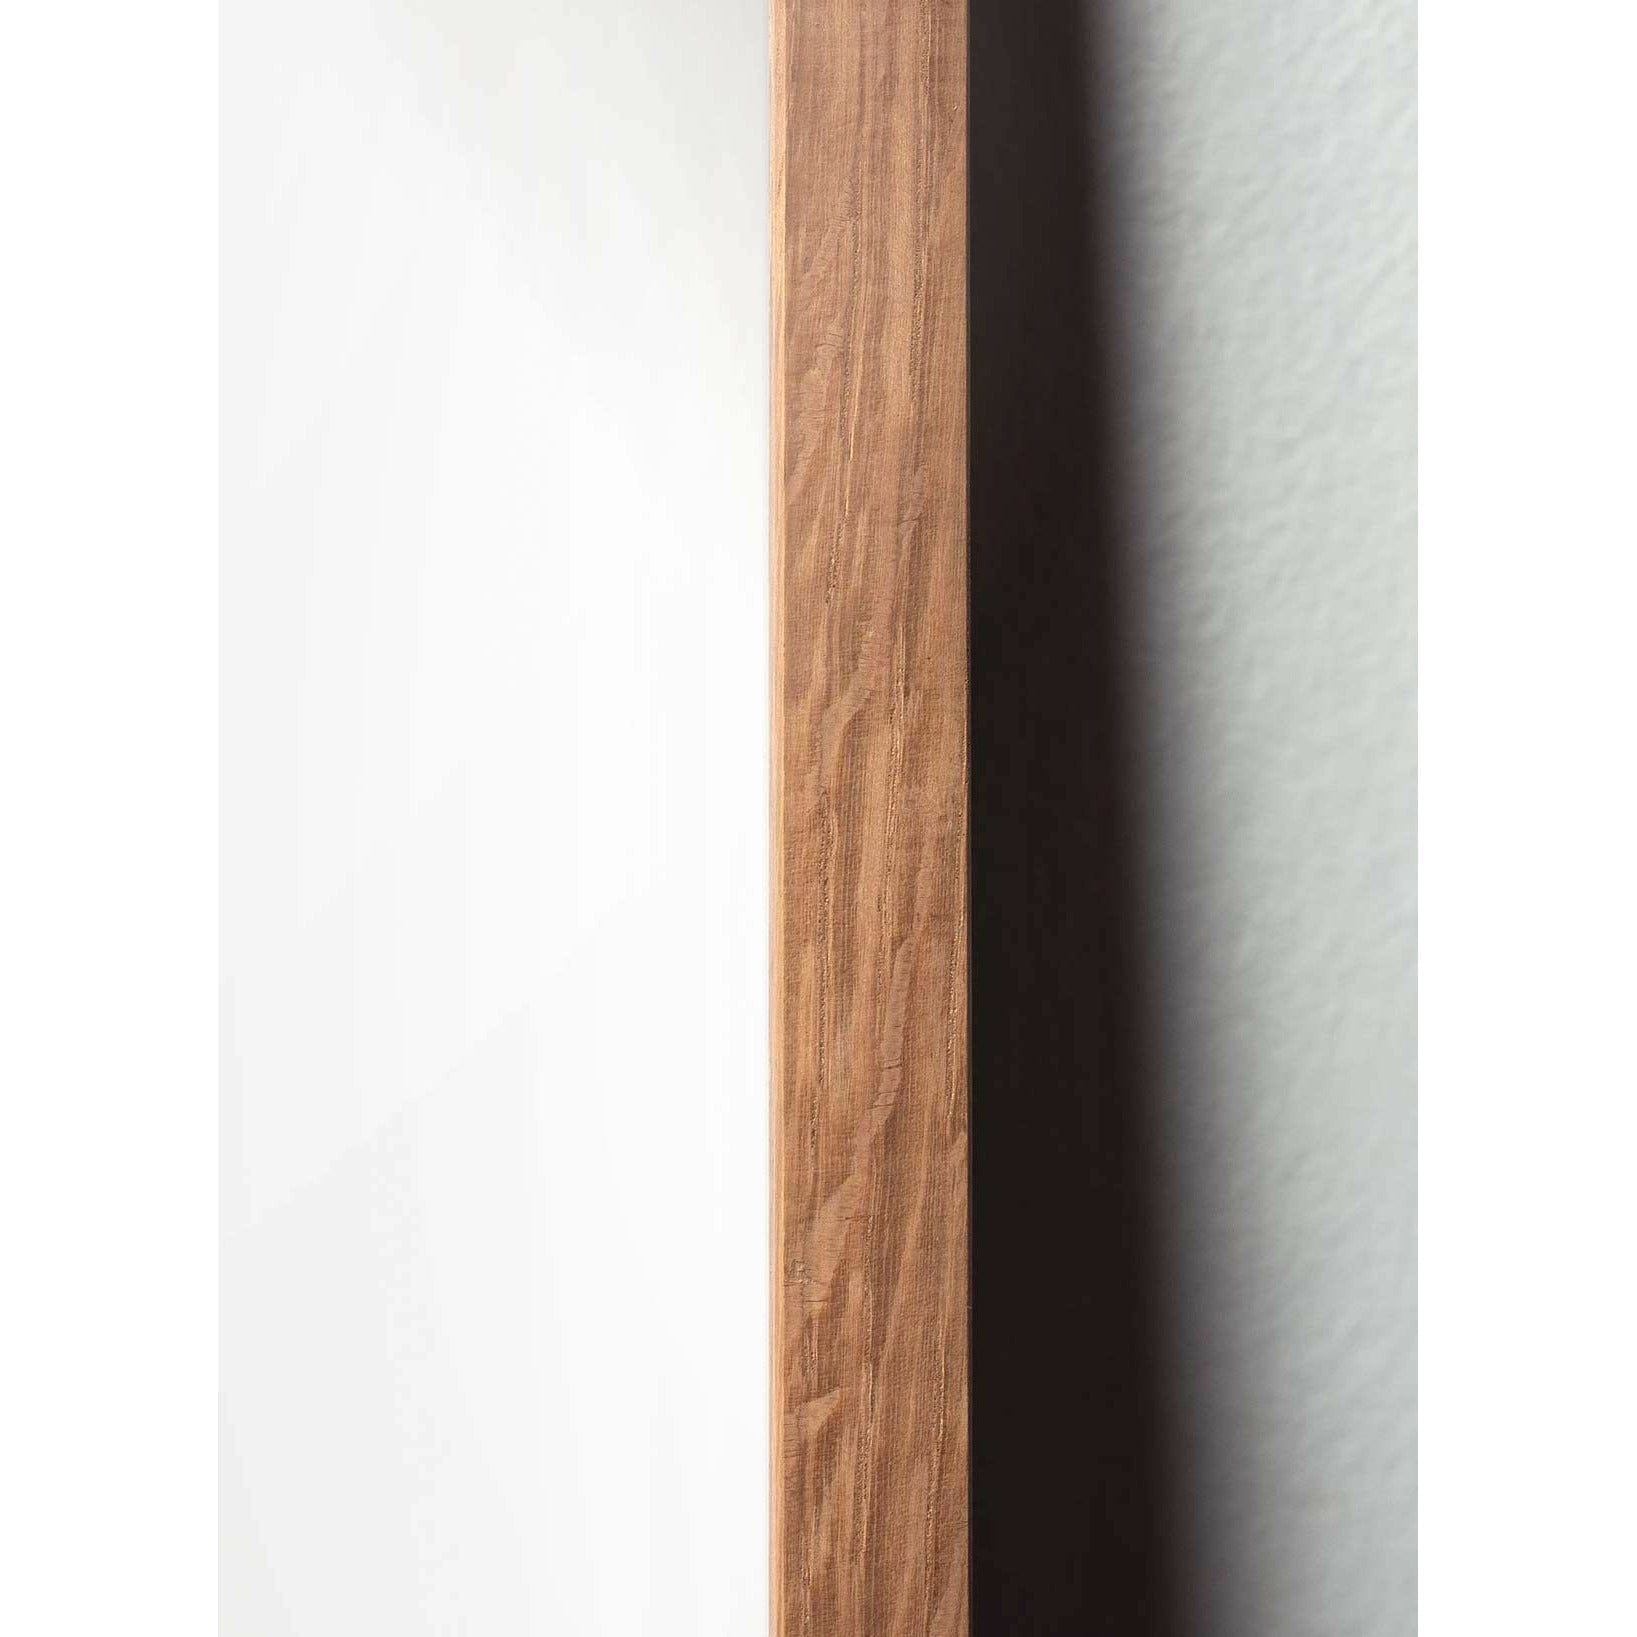 brainchild Munan ristimuodon juliste, kevyestä puusta valmistettu runko 70 x100 cm, musta